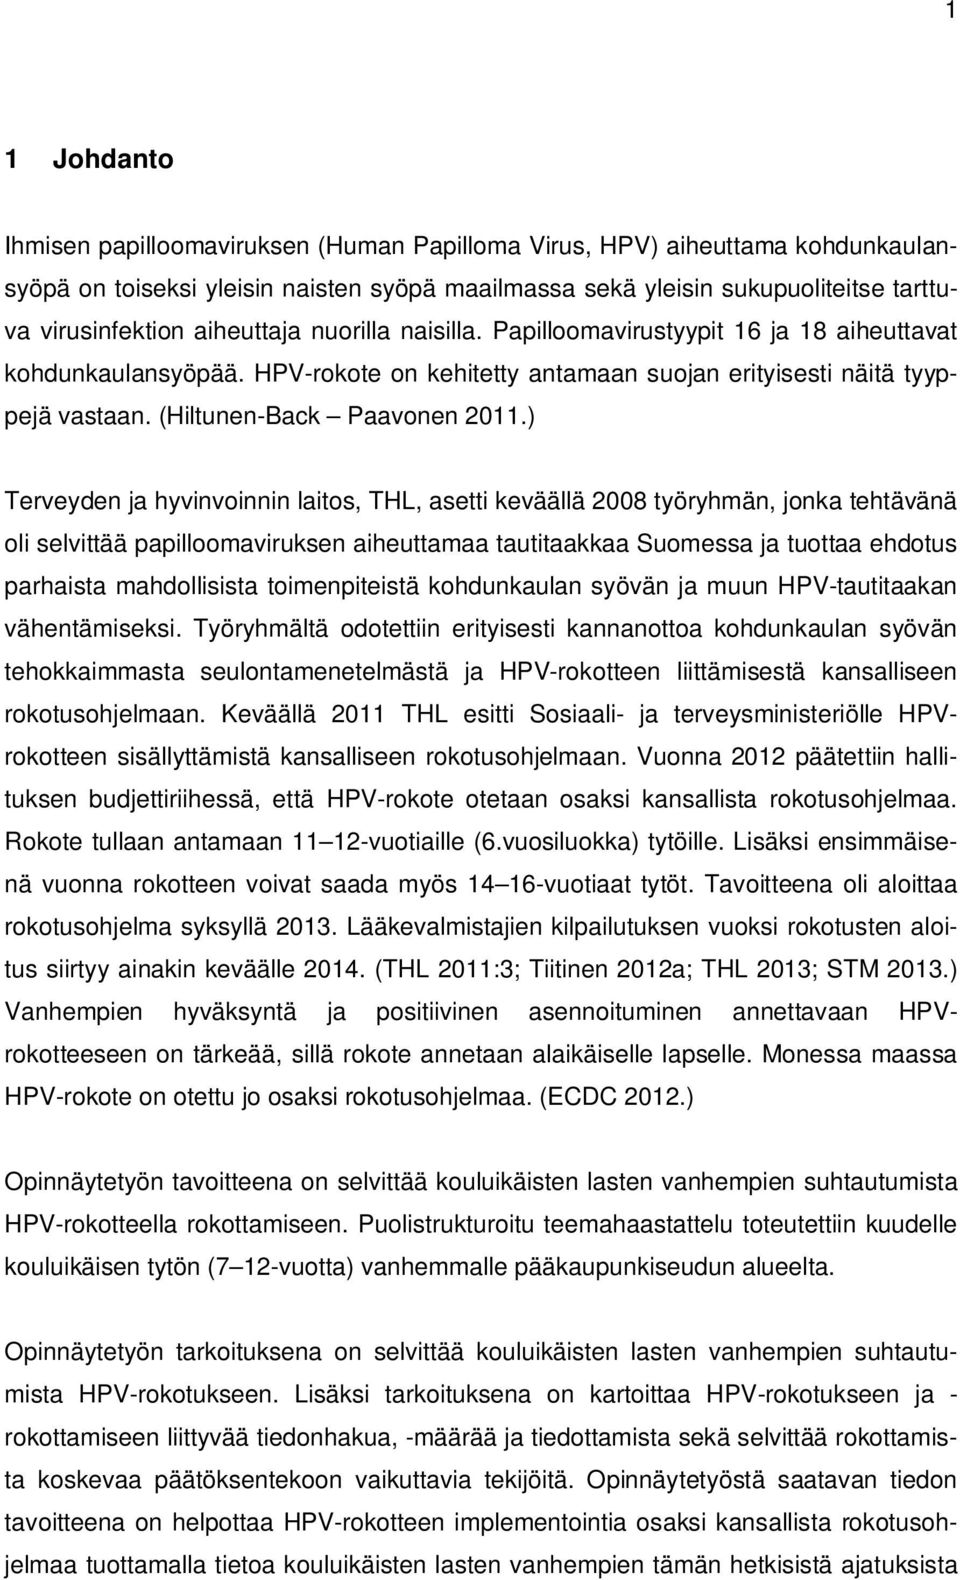 ) Terveyden ja hyvinvoinnin laitos, THL, asetti keväällä 2008 työryhmän, jonka tehtävänä oli selvittää papilloomaviruksen aiheuttamaa tautitaakkaa Suomessa ja tuottaa ehdotus parhaista mahdollisista